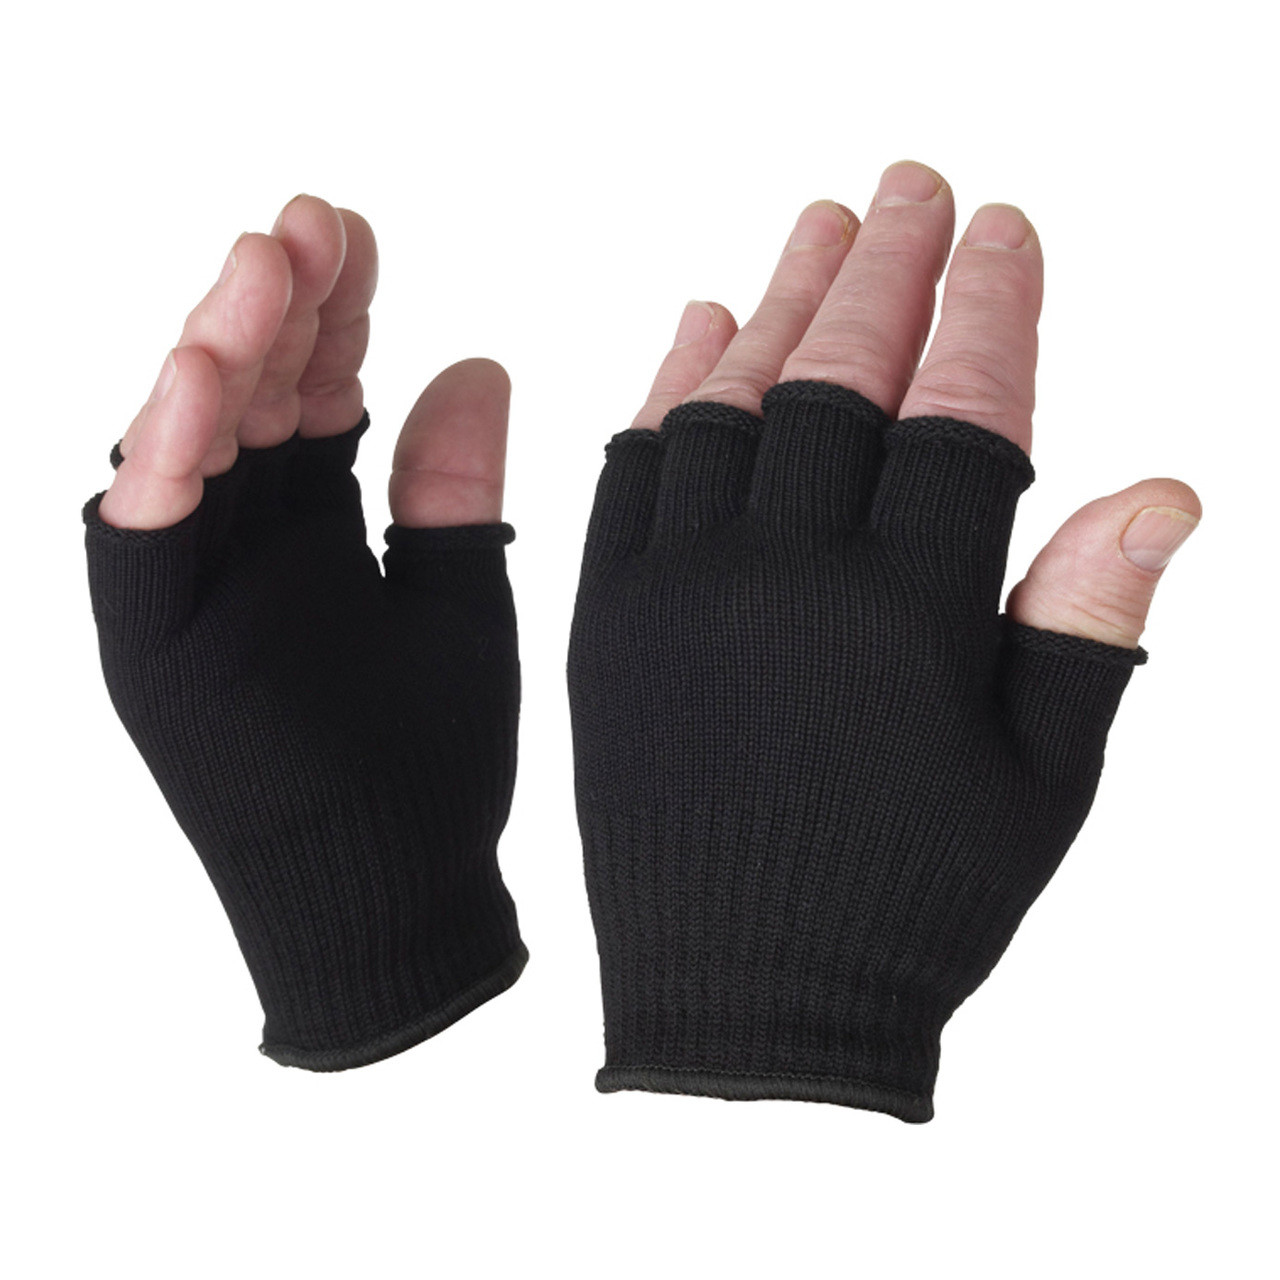 Fingerless Gloves Wholesale 